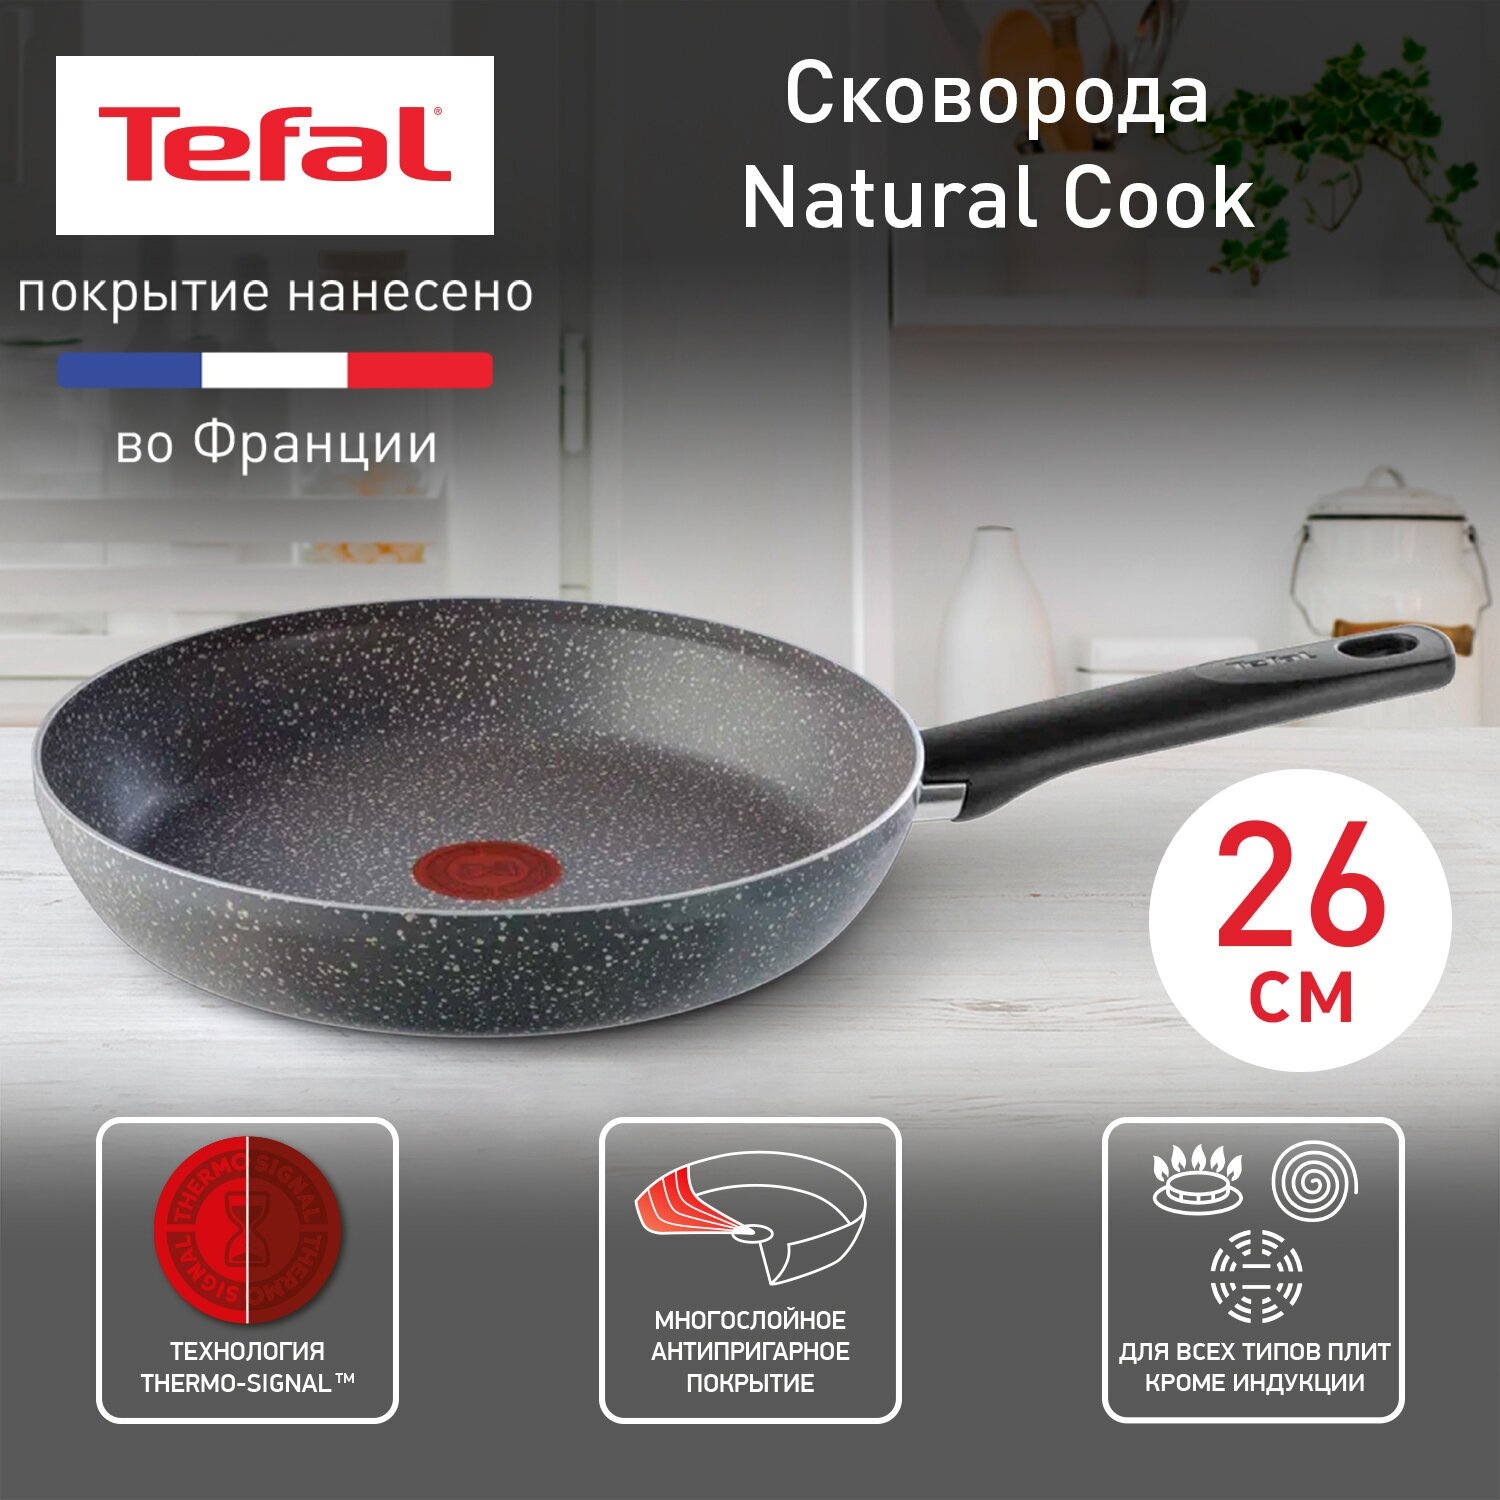 Сковорода Tefal Natural Cook 04211126, диаметр 26 см, с индикатором температуры и антипригарным покрытием, для газовых, электрических плит